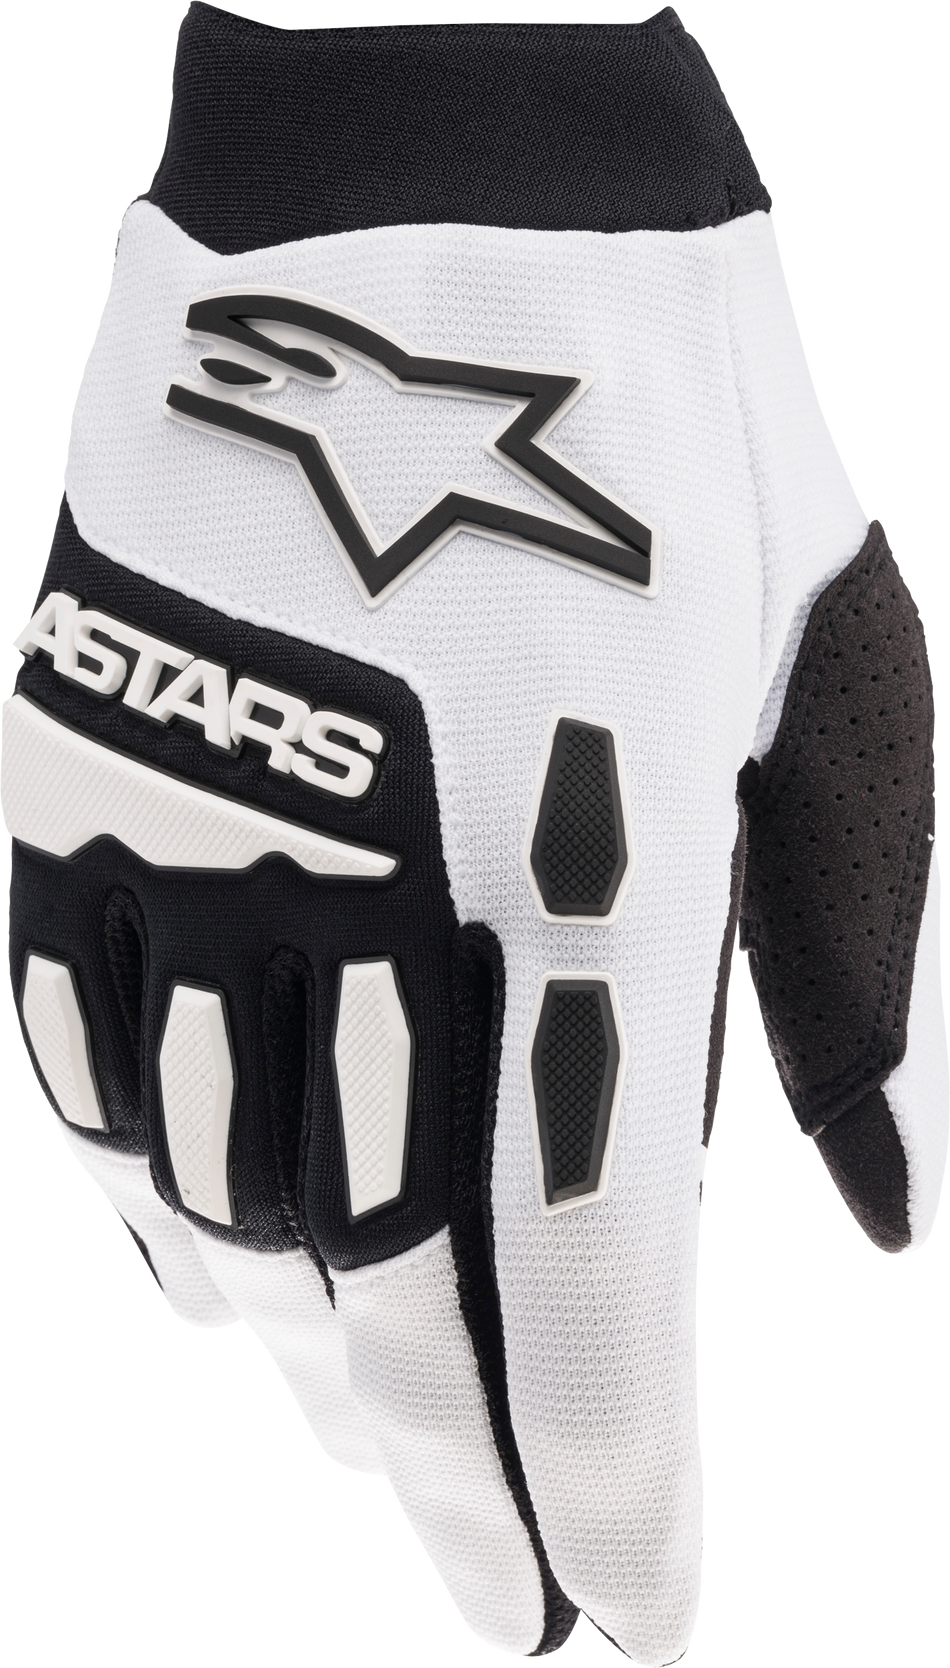 ALPINESTARS Full Bore Gloves White/Black Md 3563622-21-M